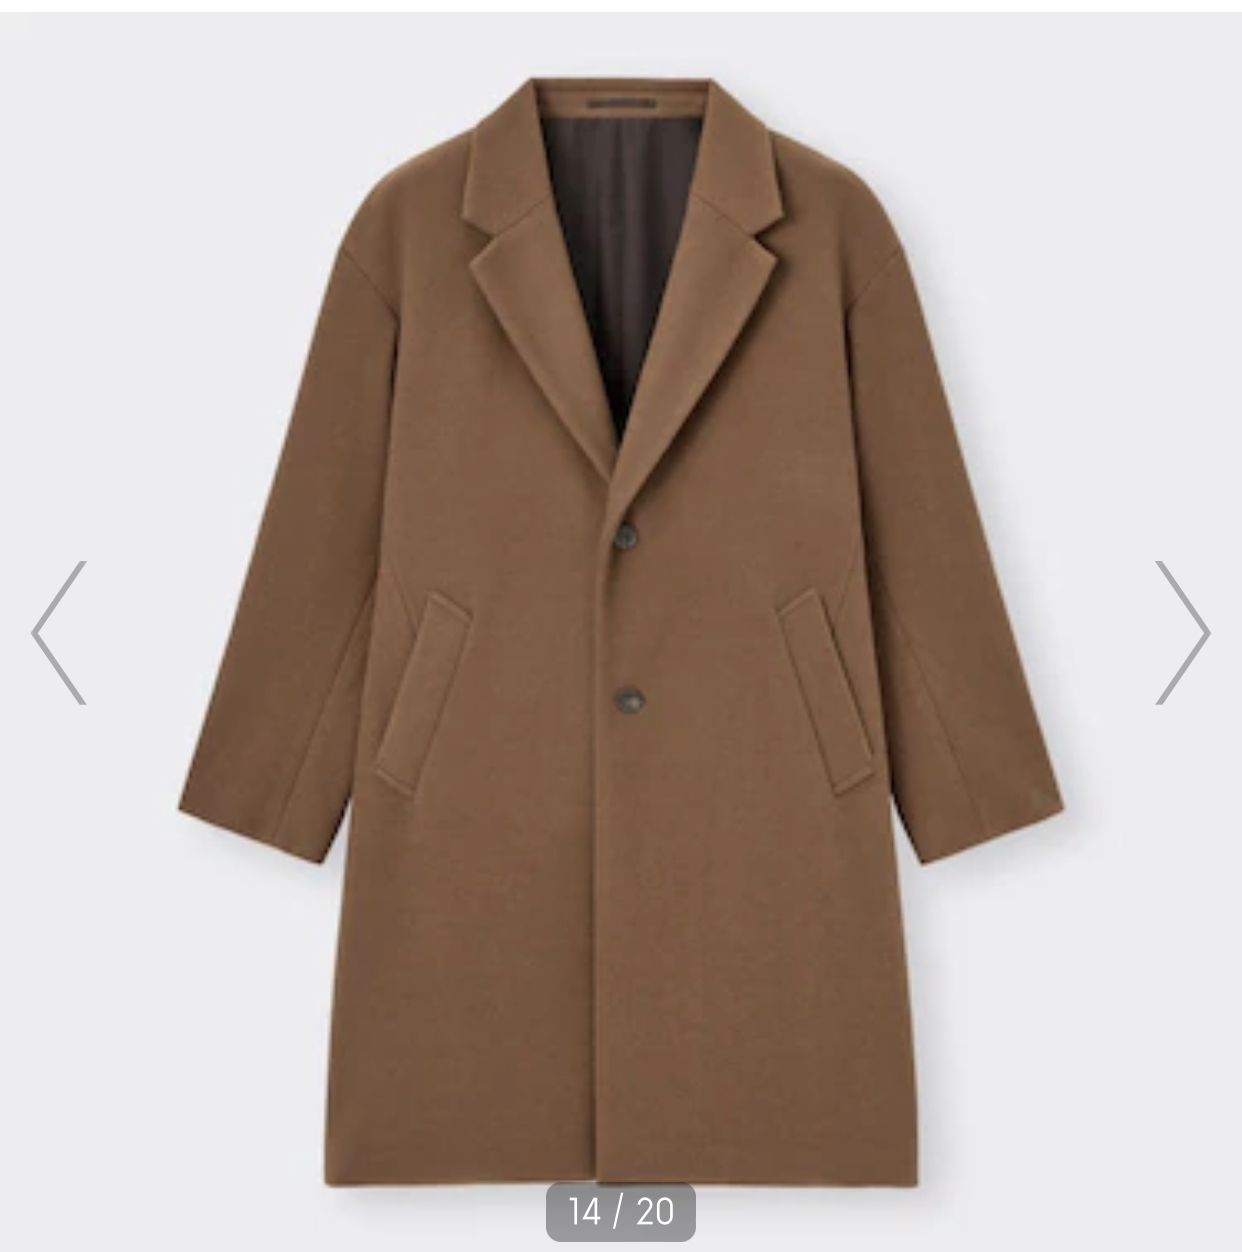 【画像】ジーユーのこのコート買おうとしてるんだが、色で迷ってる